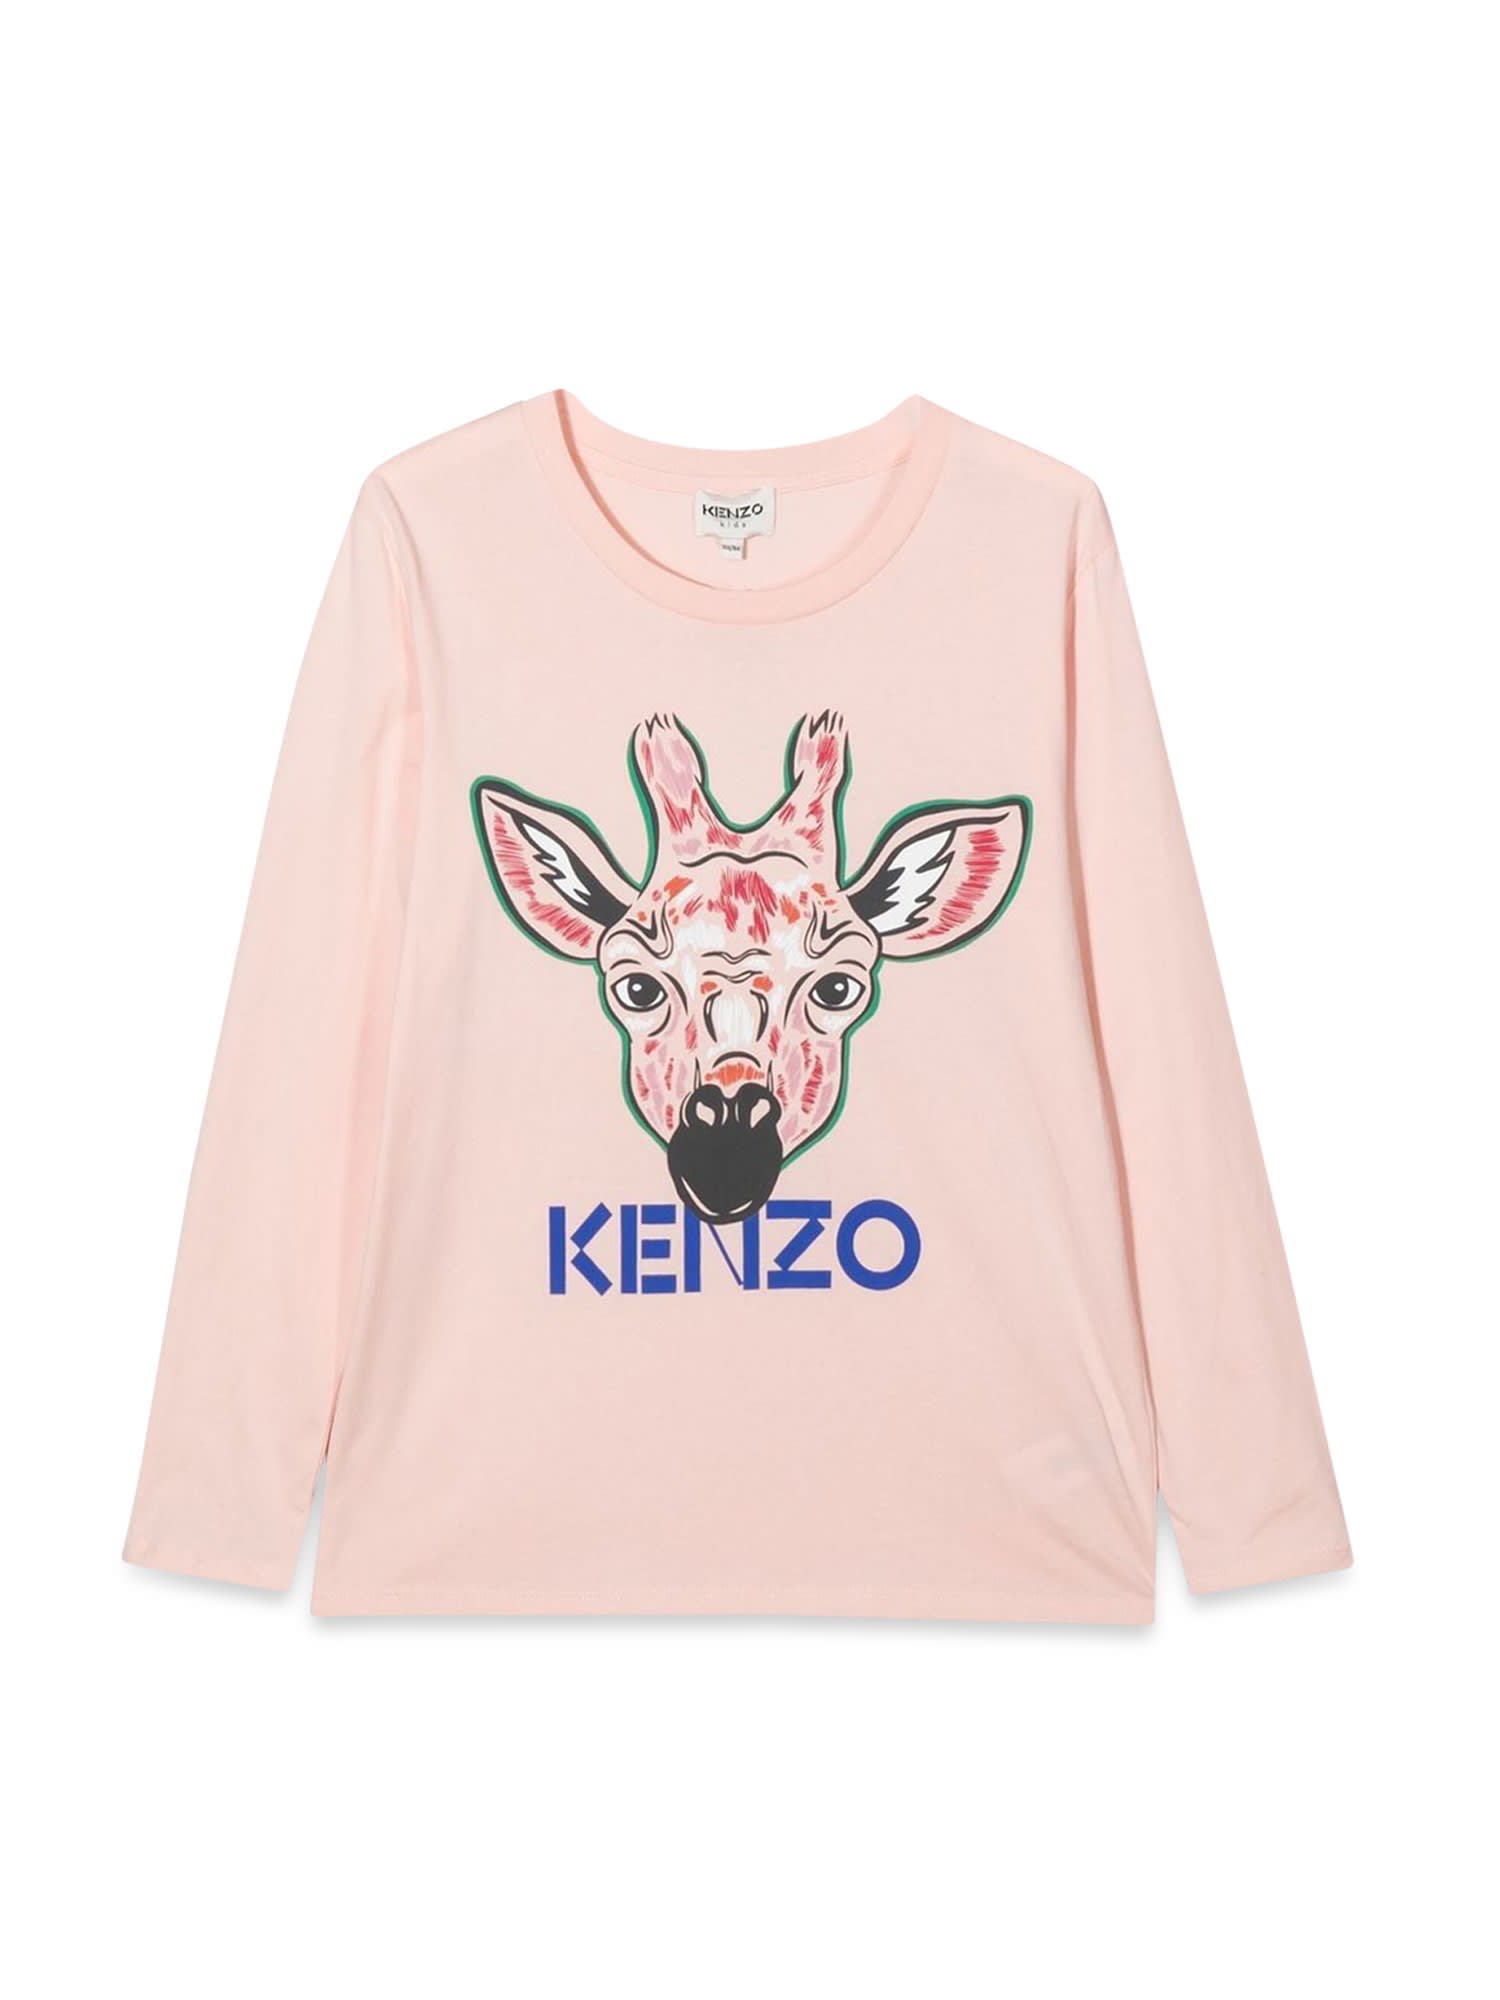 Kenzo Giraffe Long Sleeve T-shirt